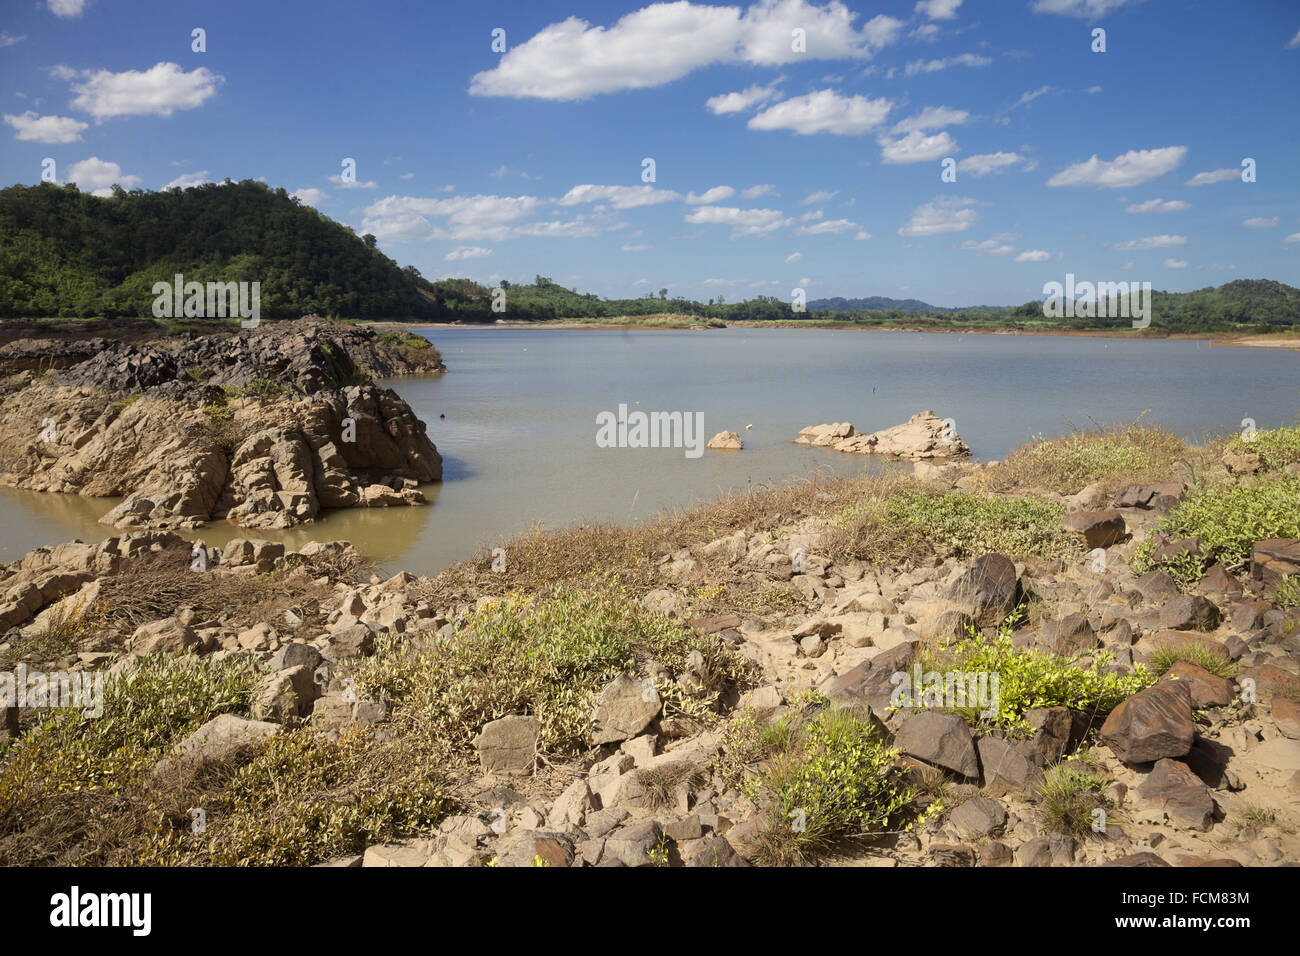 Der Mekong Fluß zwischen Thailand und Laos. Von der thailändischen Seite. Stockfoto